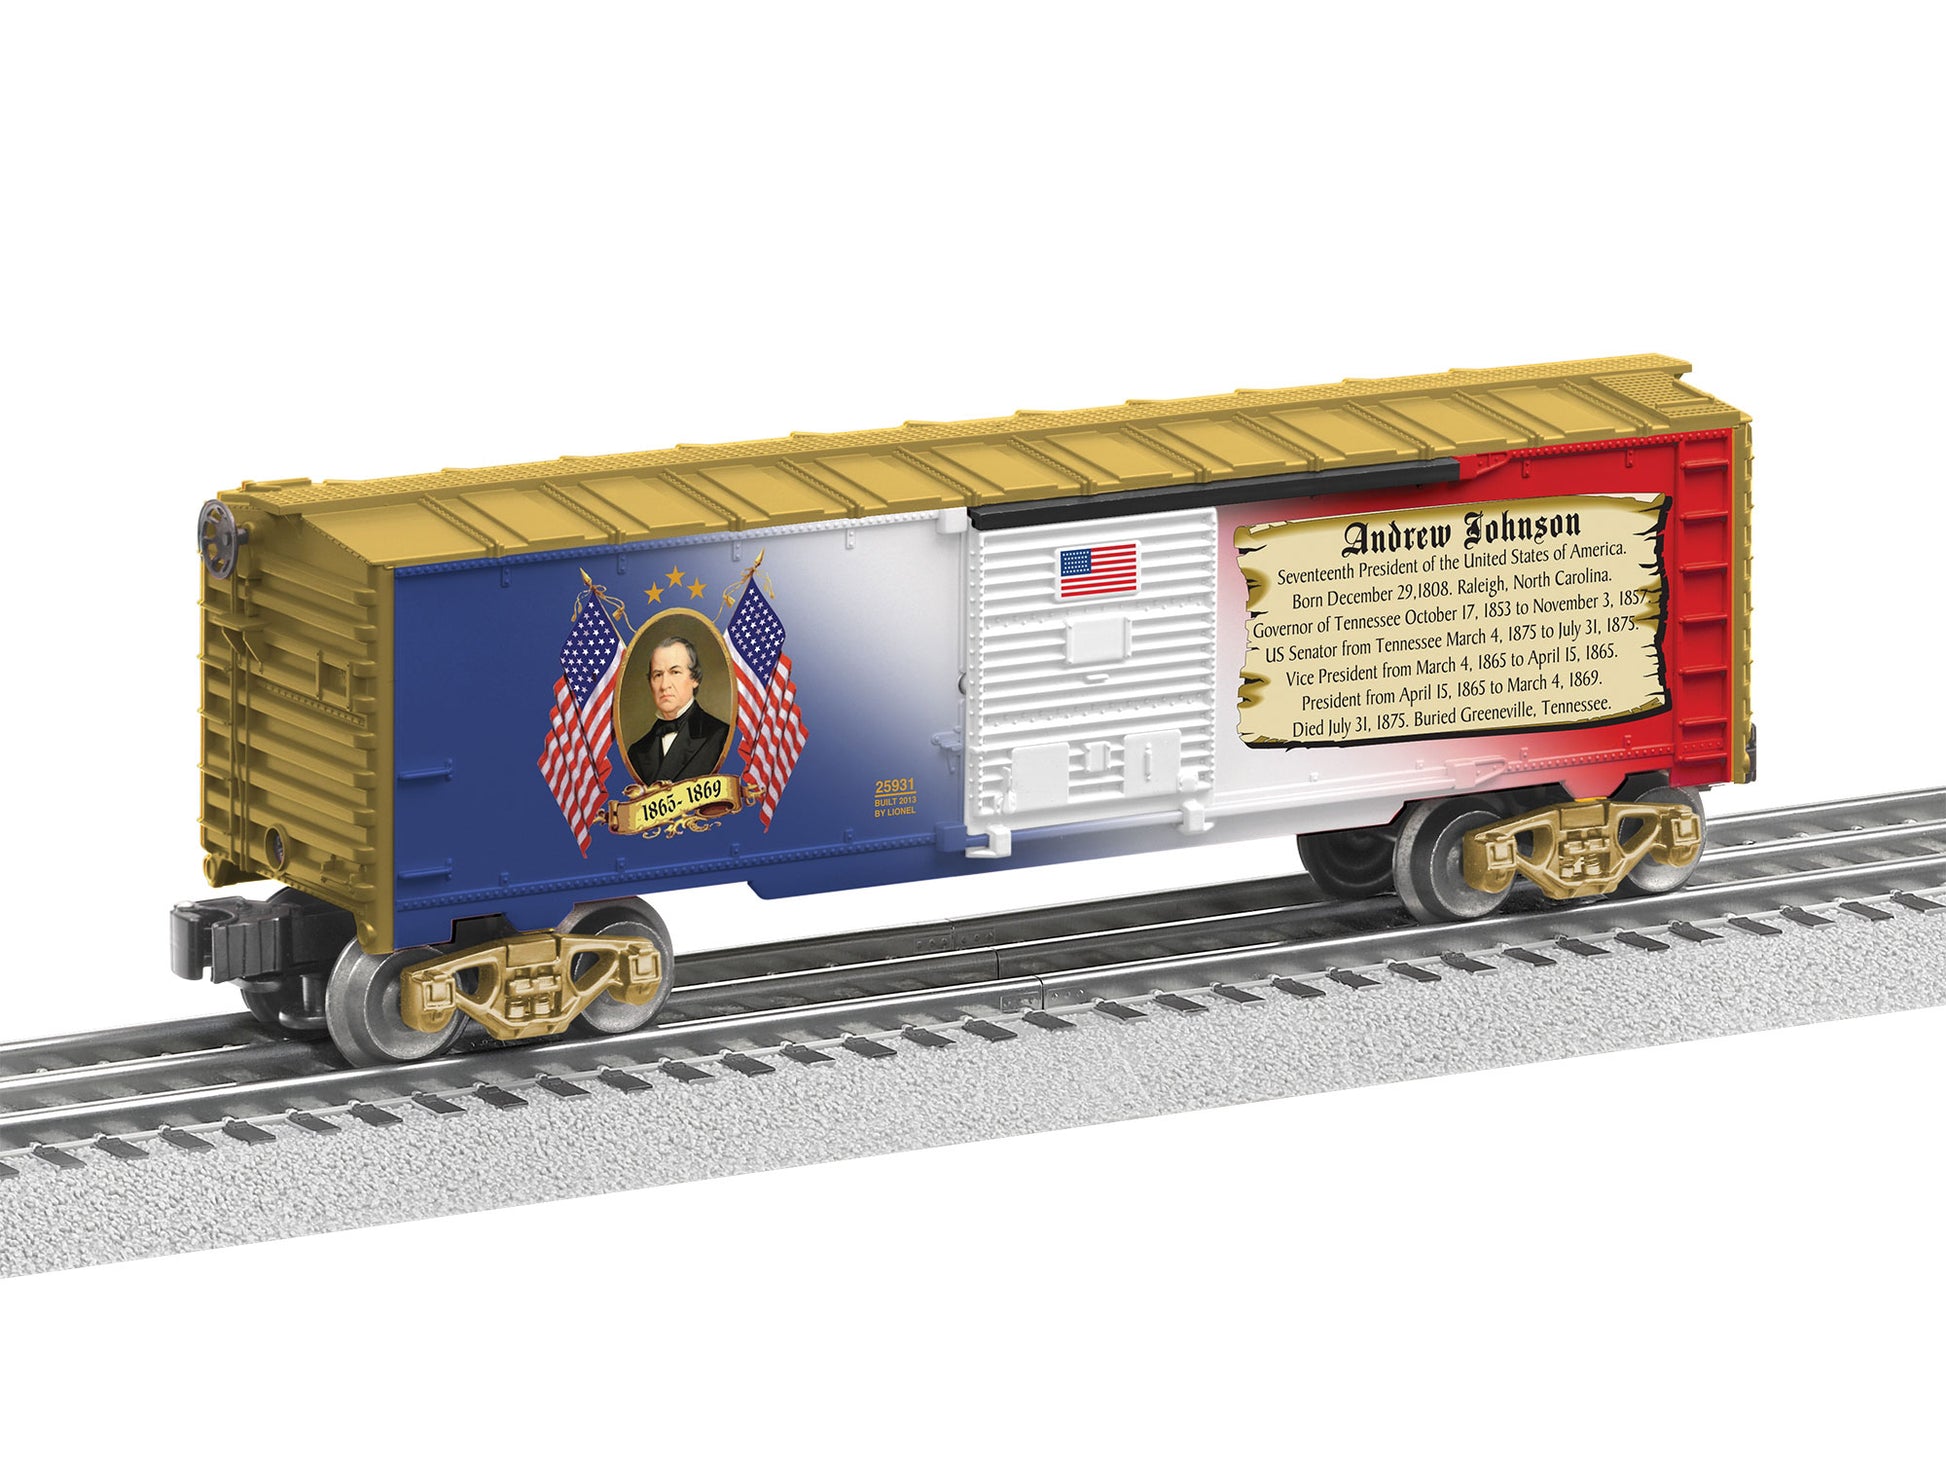 Lionel model train rail car O scale Andrew Johnson Boxcar.